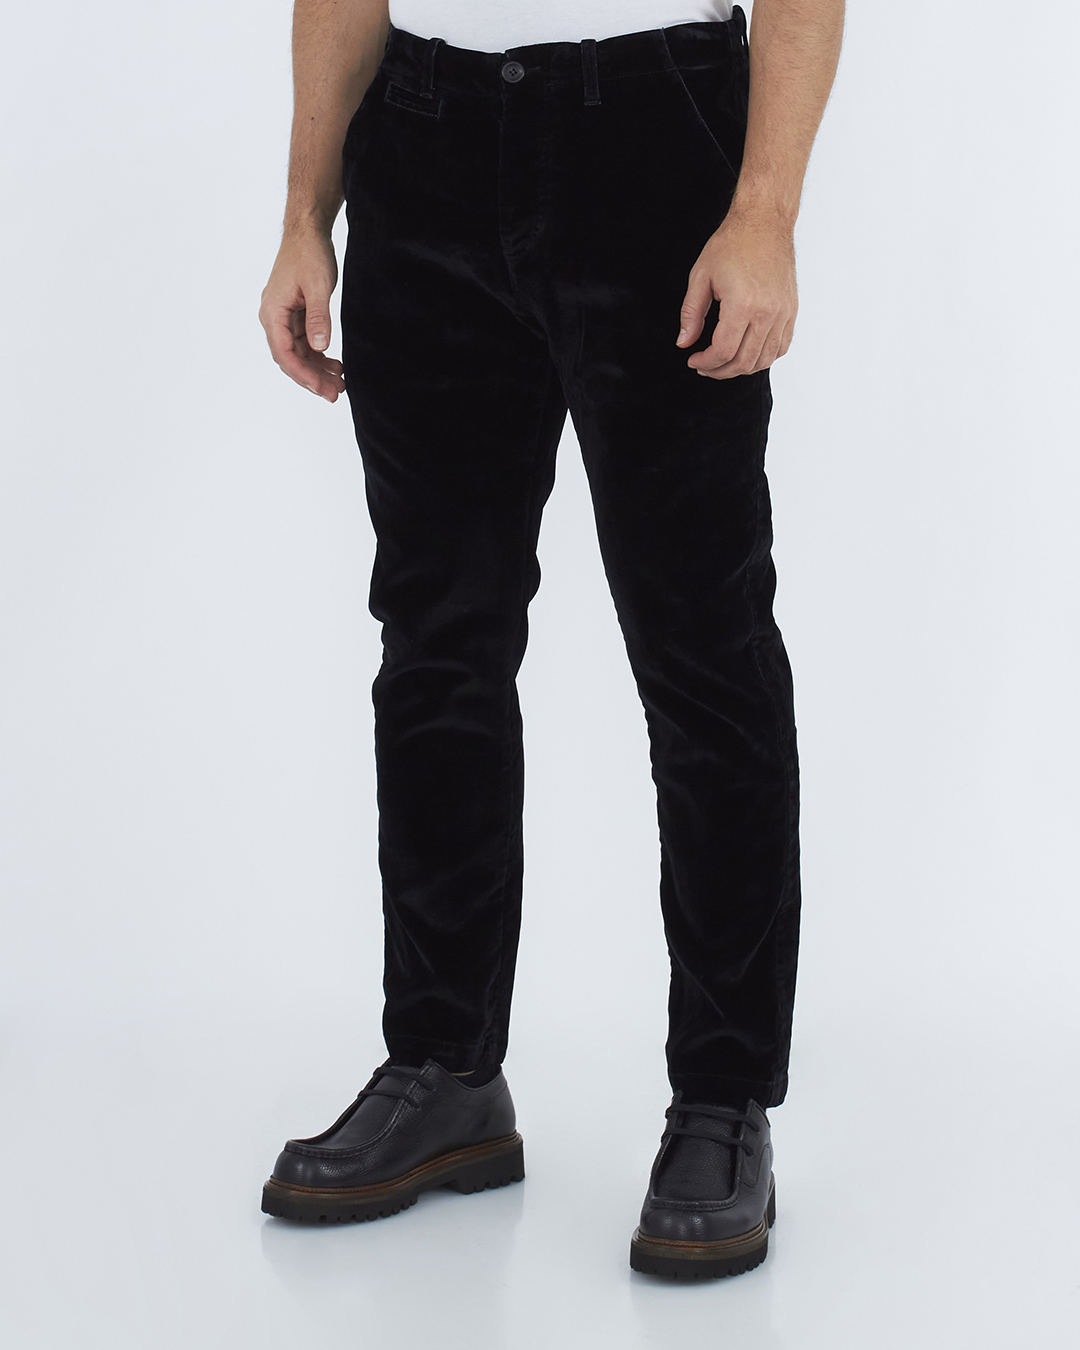 брюки Hannes Roether 110615/7007 черный xl, размер xl 110615/7007 110615/7007 черный xl - фото 3